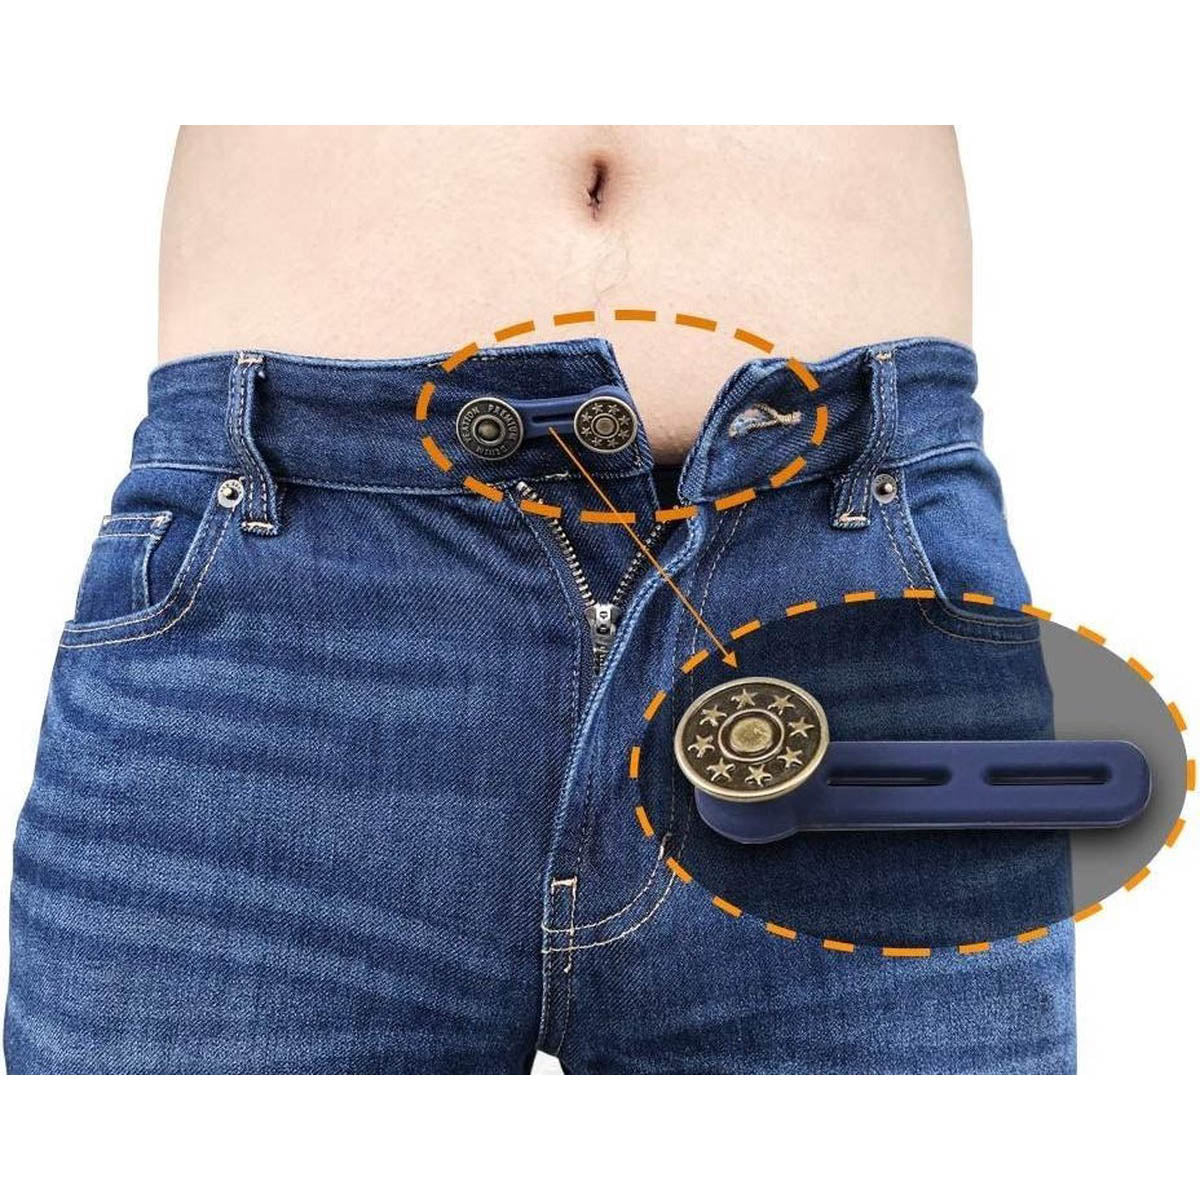 Spijkerbroek verlengknoop- 1 x 5 cm & 1 en 2 cm - knoopverlenger - verstelknoop - spijkerbroek te strak - Wonderknopen - Zwangerschap Broekverbreder - Knoopsgat verlengers - Ariko